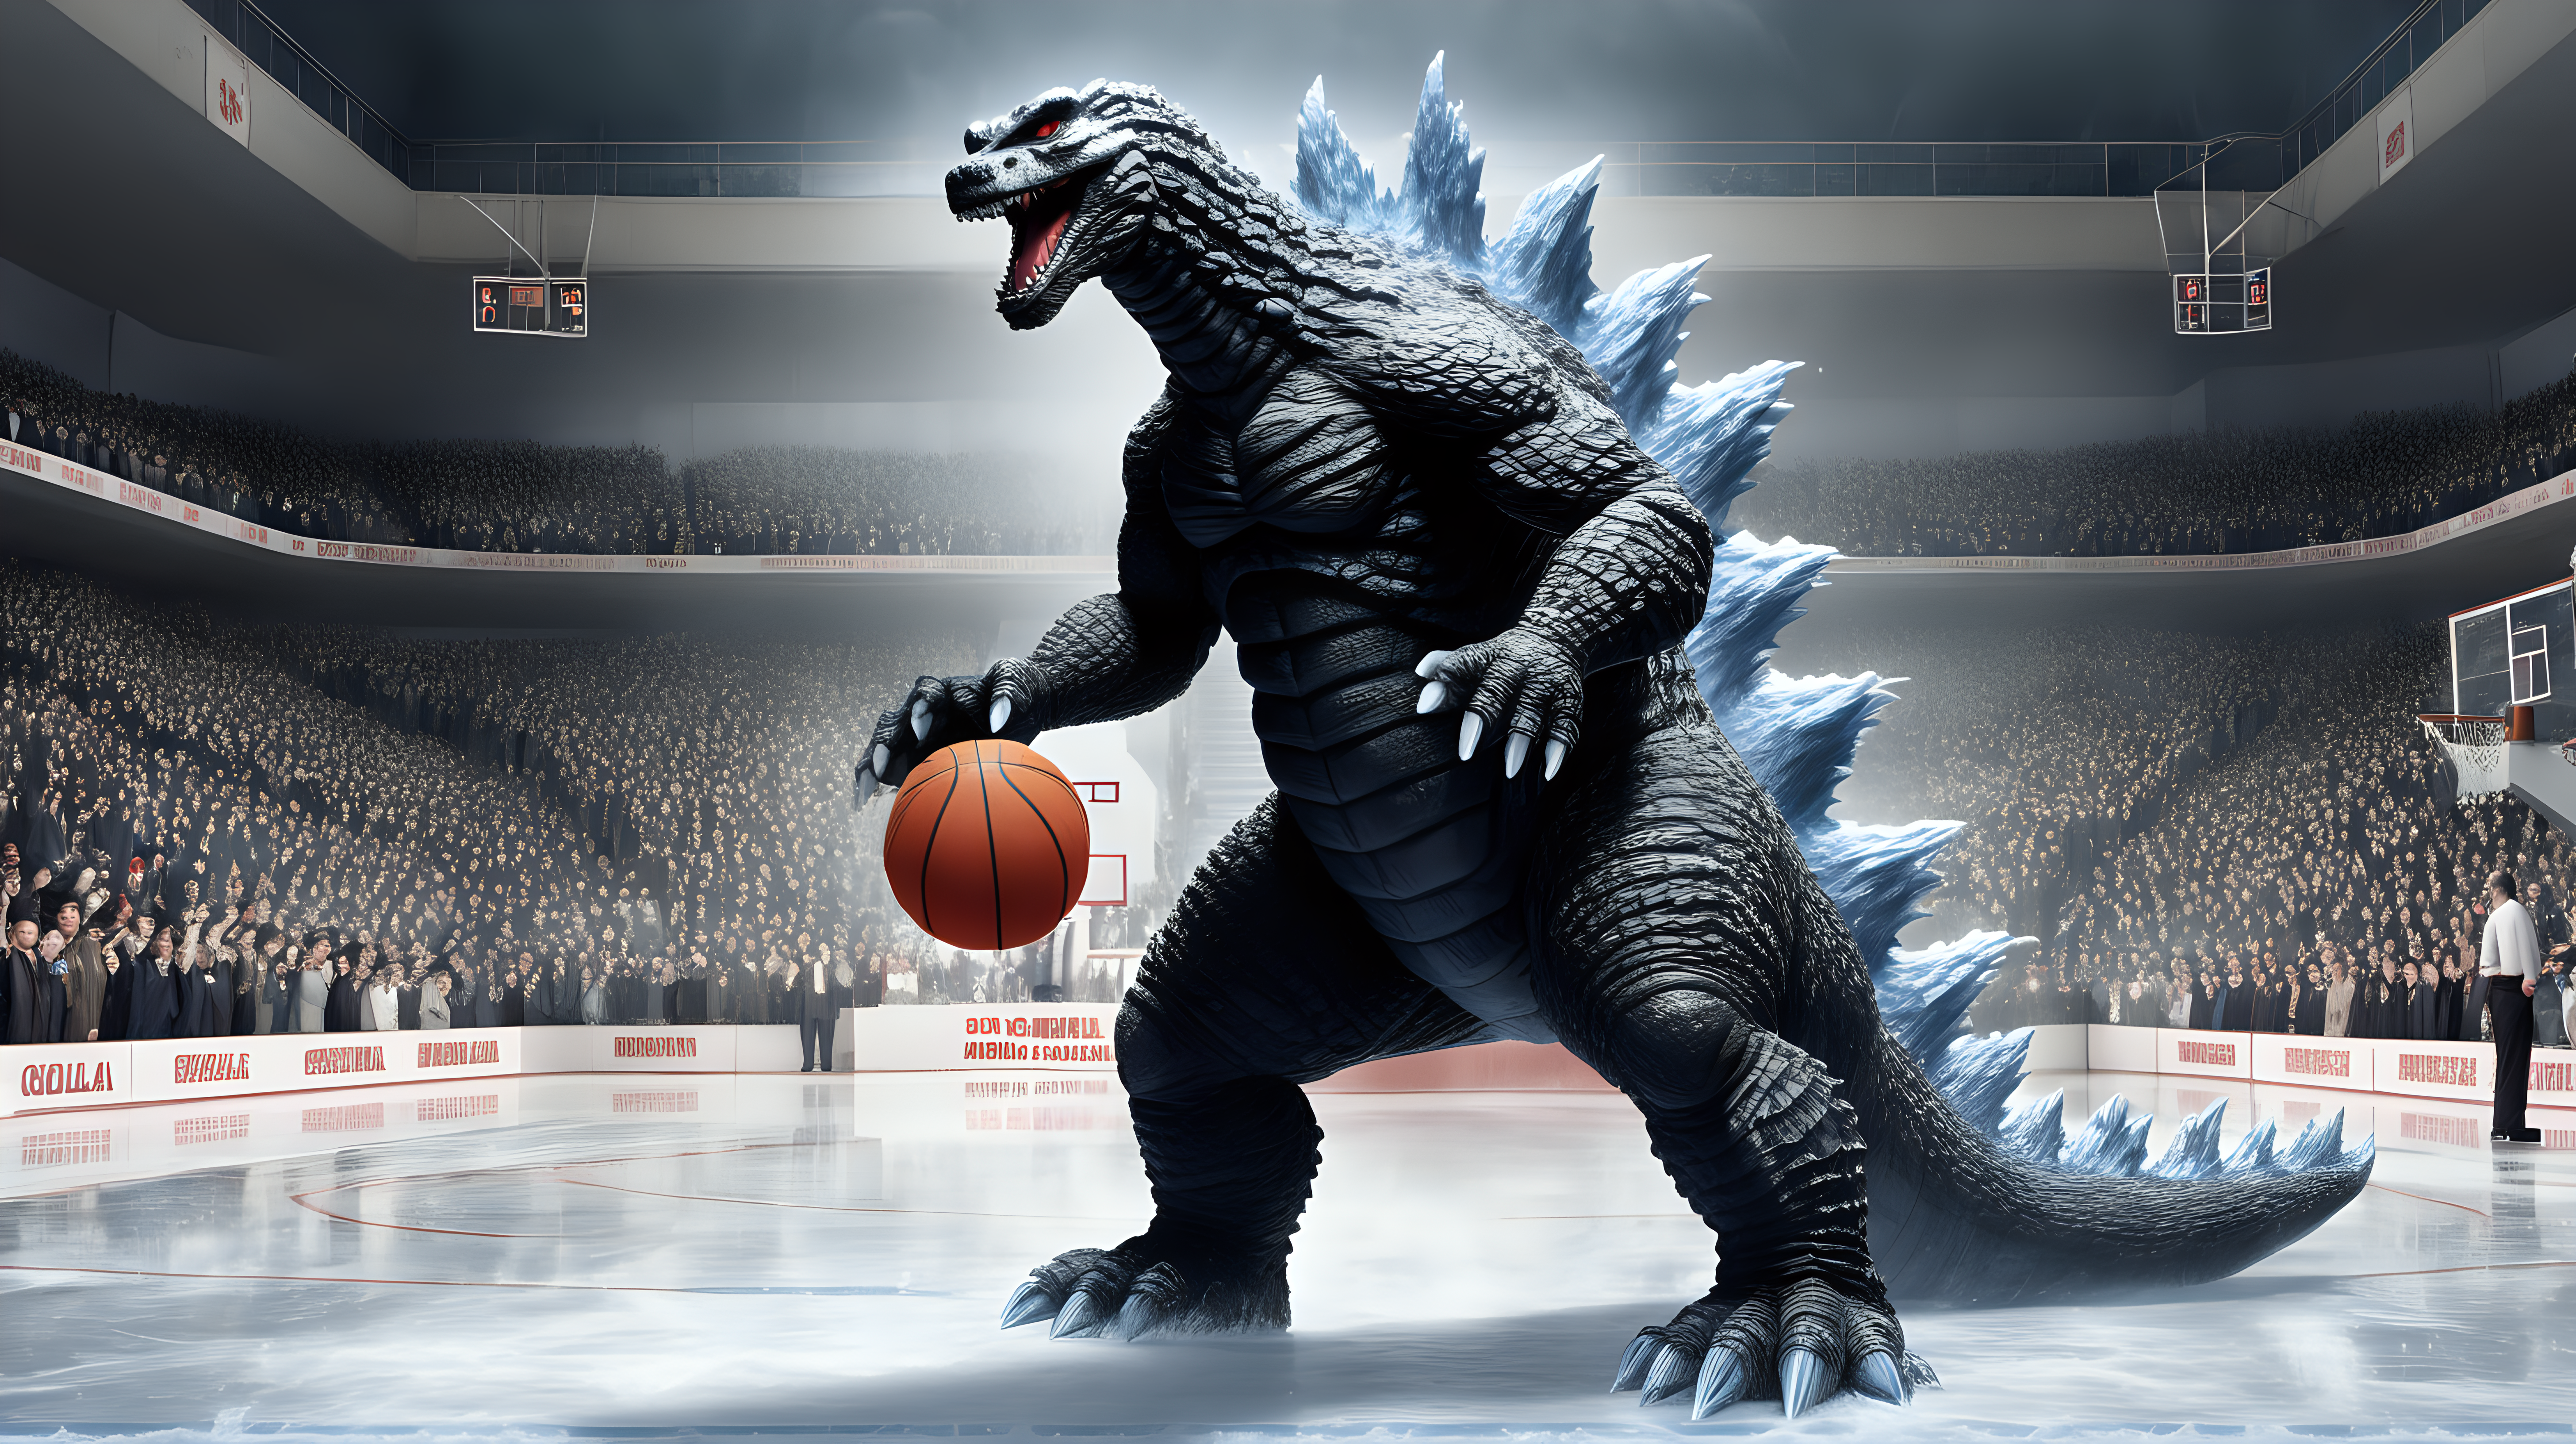 Godzilla playing basketball on ice